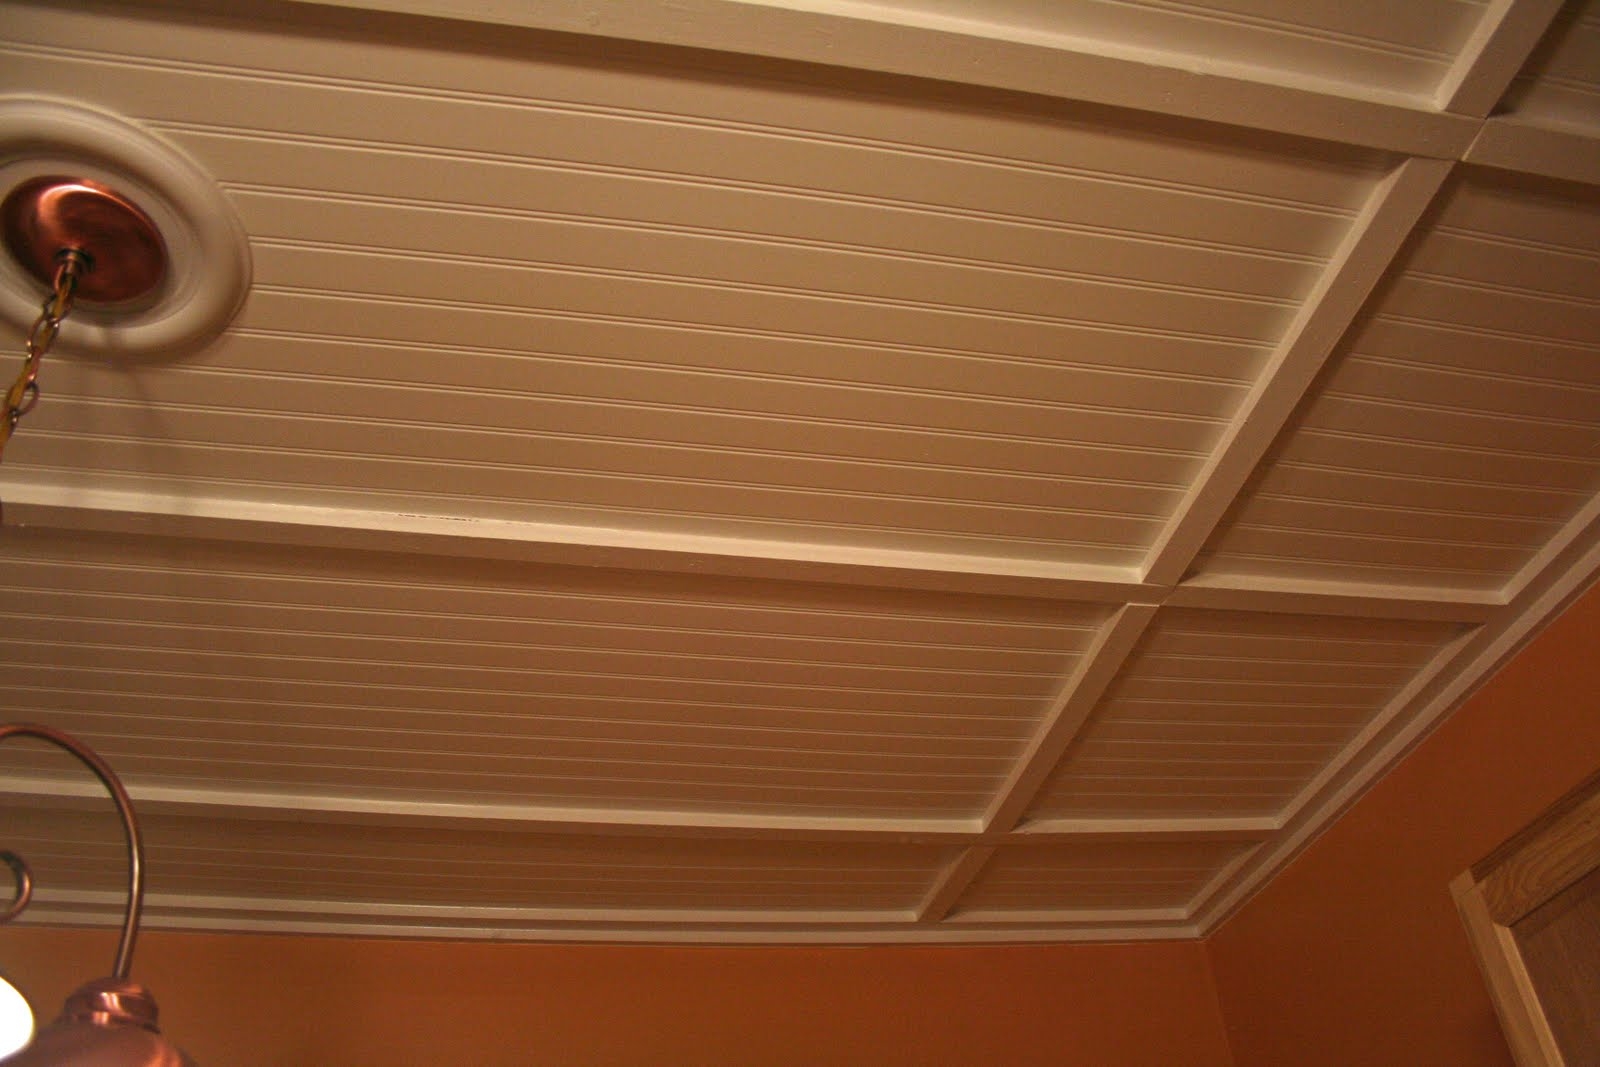 Permalink to Ceiling Tiles Wood Look